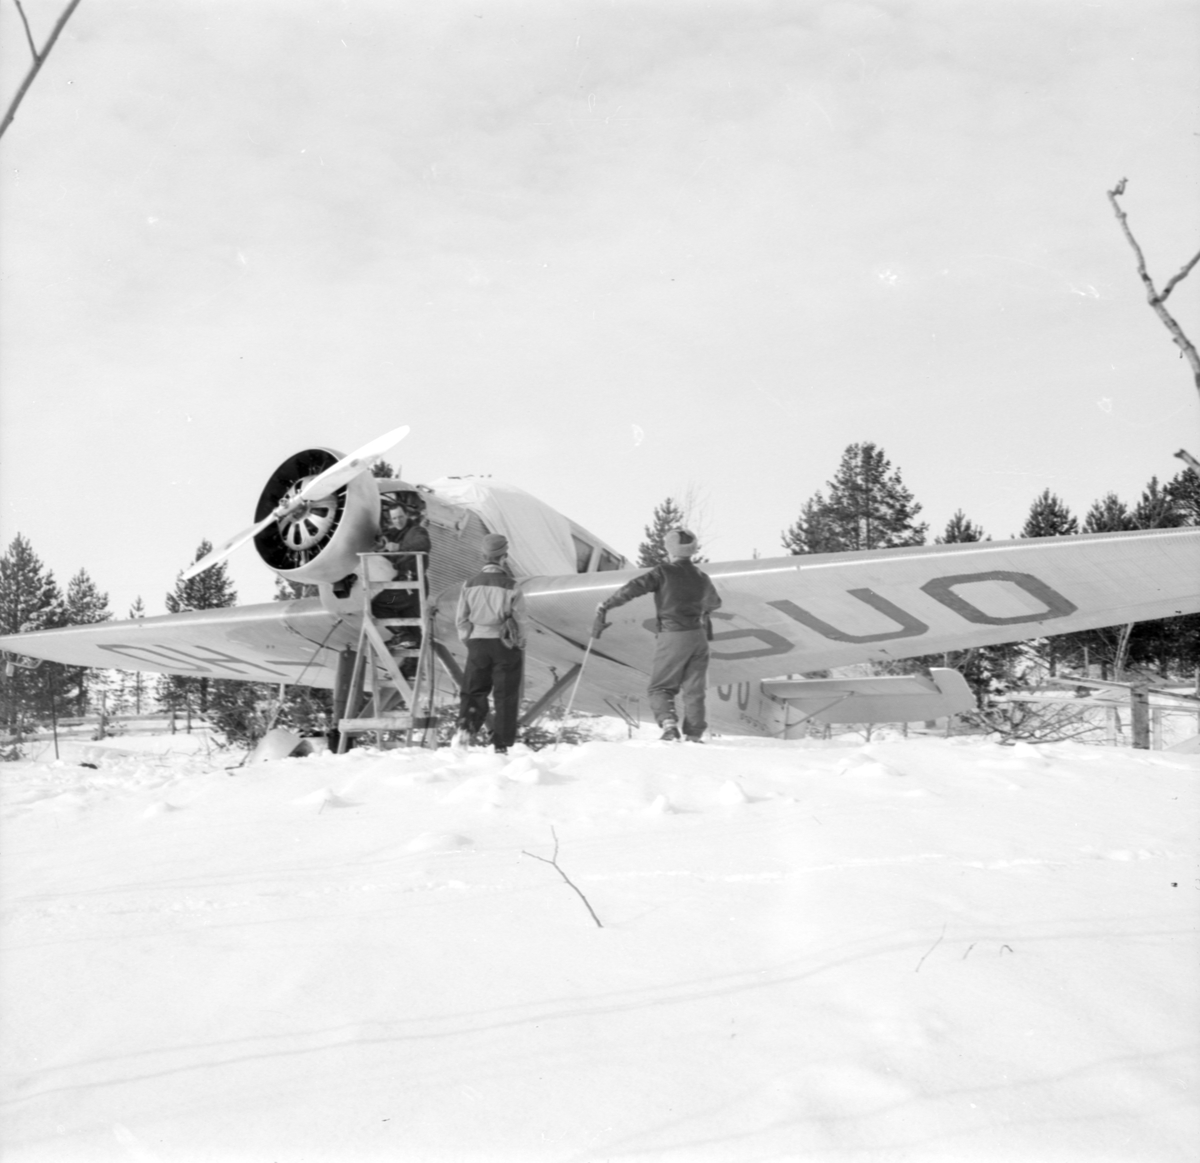 Underhåll av flygplan Junkers F-13 märkt OH-SUO vid F 19, Svenska frivilligkåren i Finland. Tre personer i arbete.